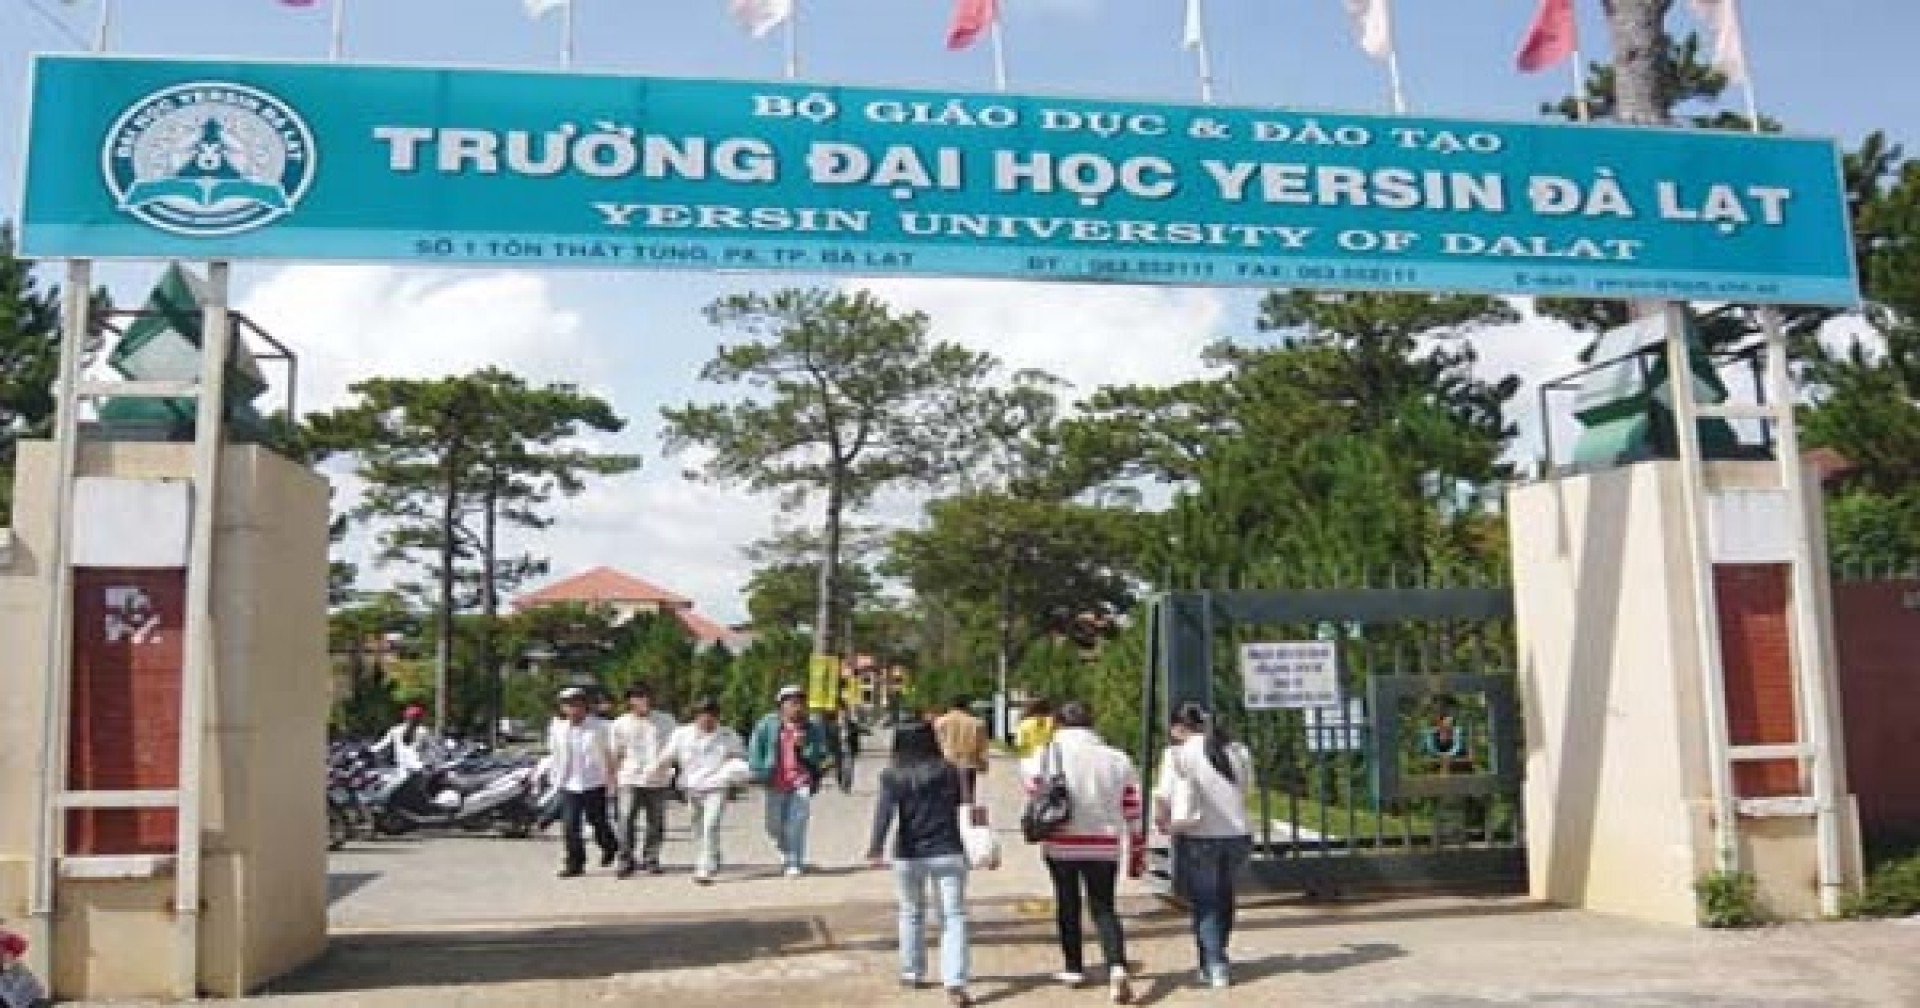 Công bố thông tin tuyển sinh Trường Đại học Yersin Đà Lạt mới nhất 2019